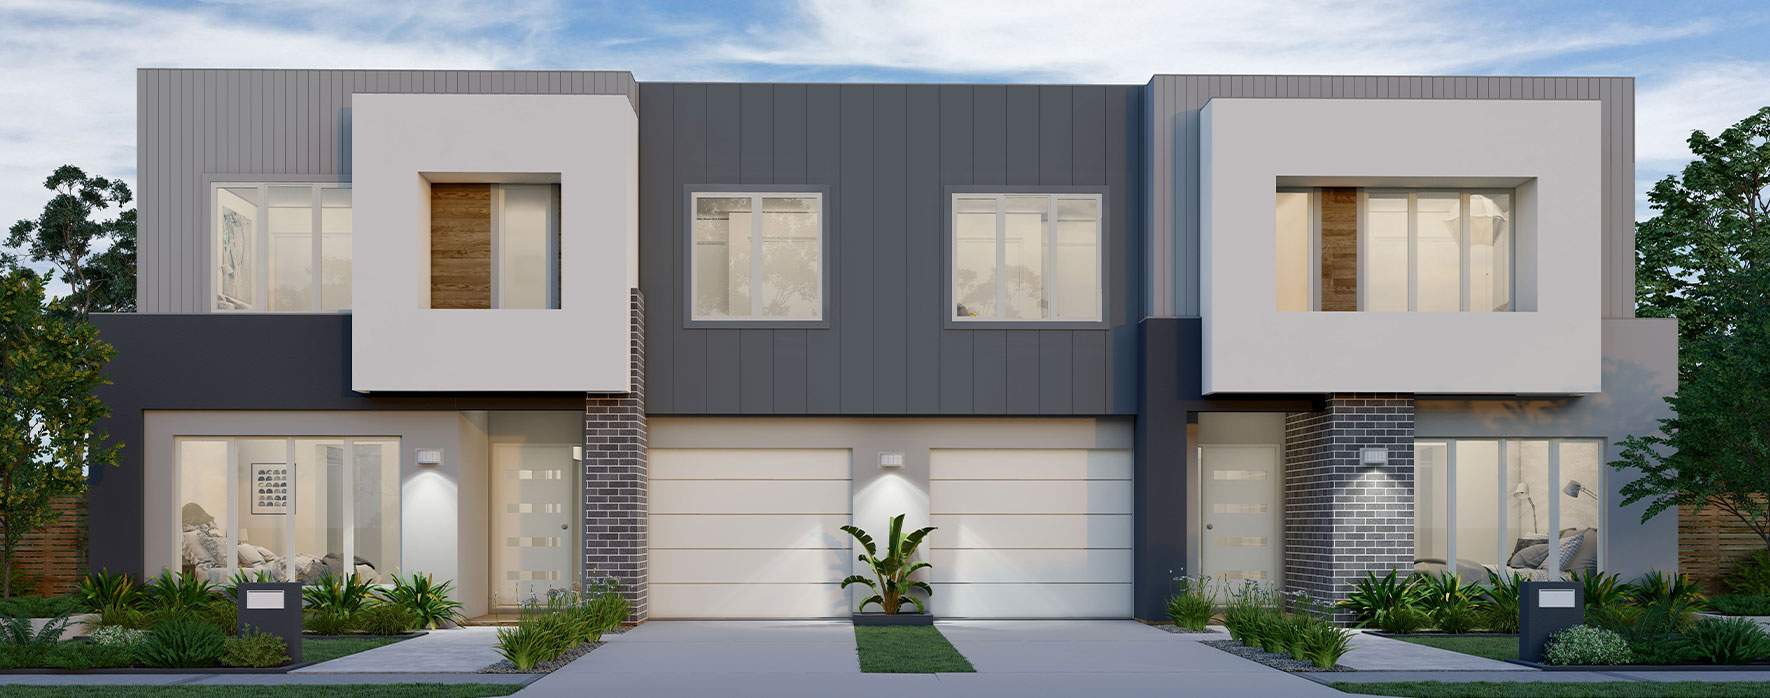 macquarie-duplex-house-design-contemporary